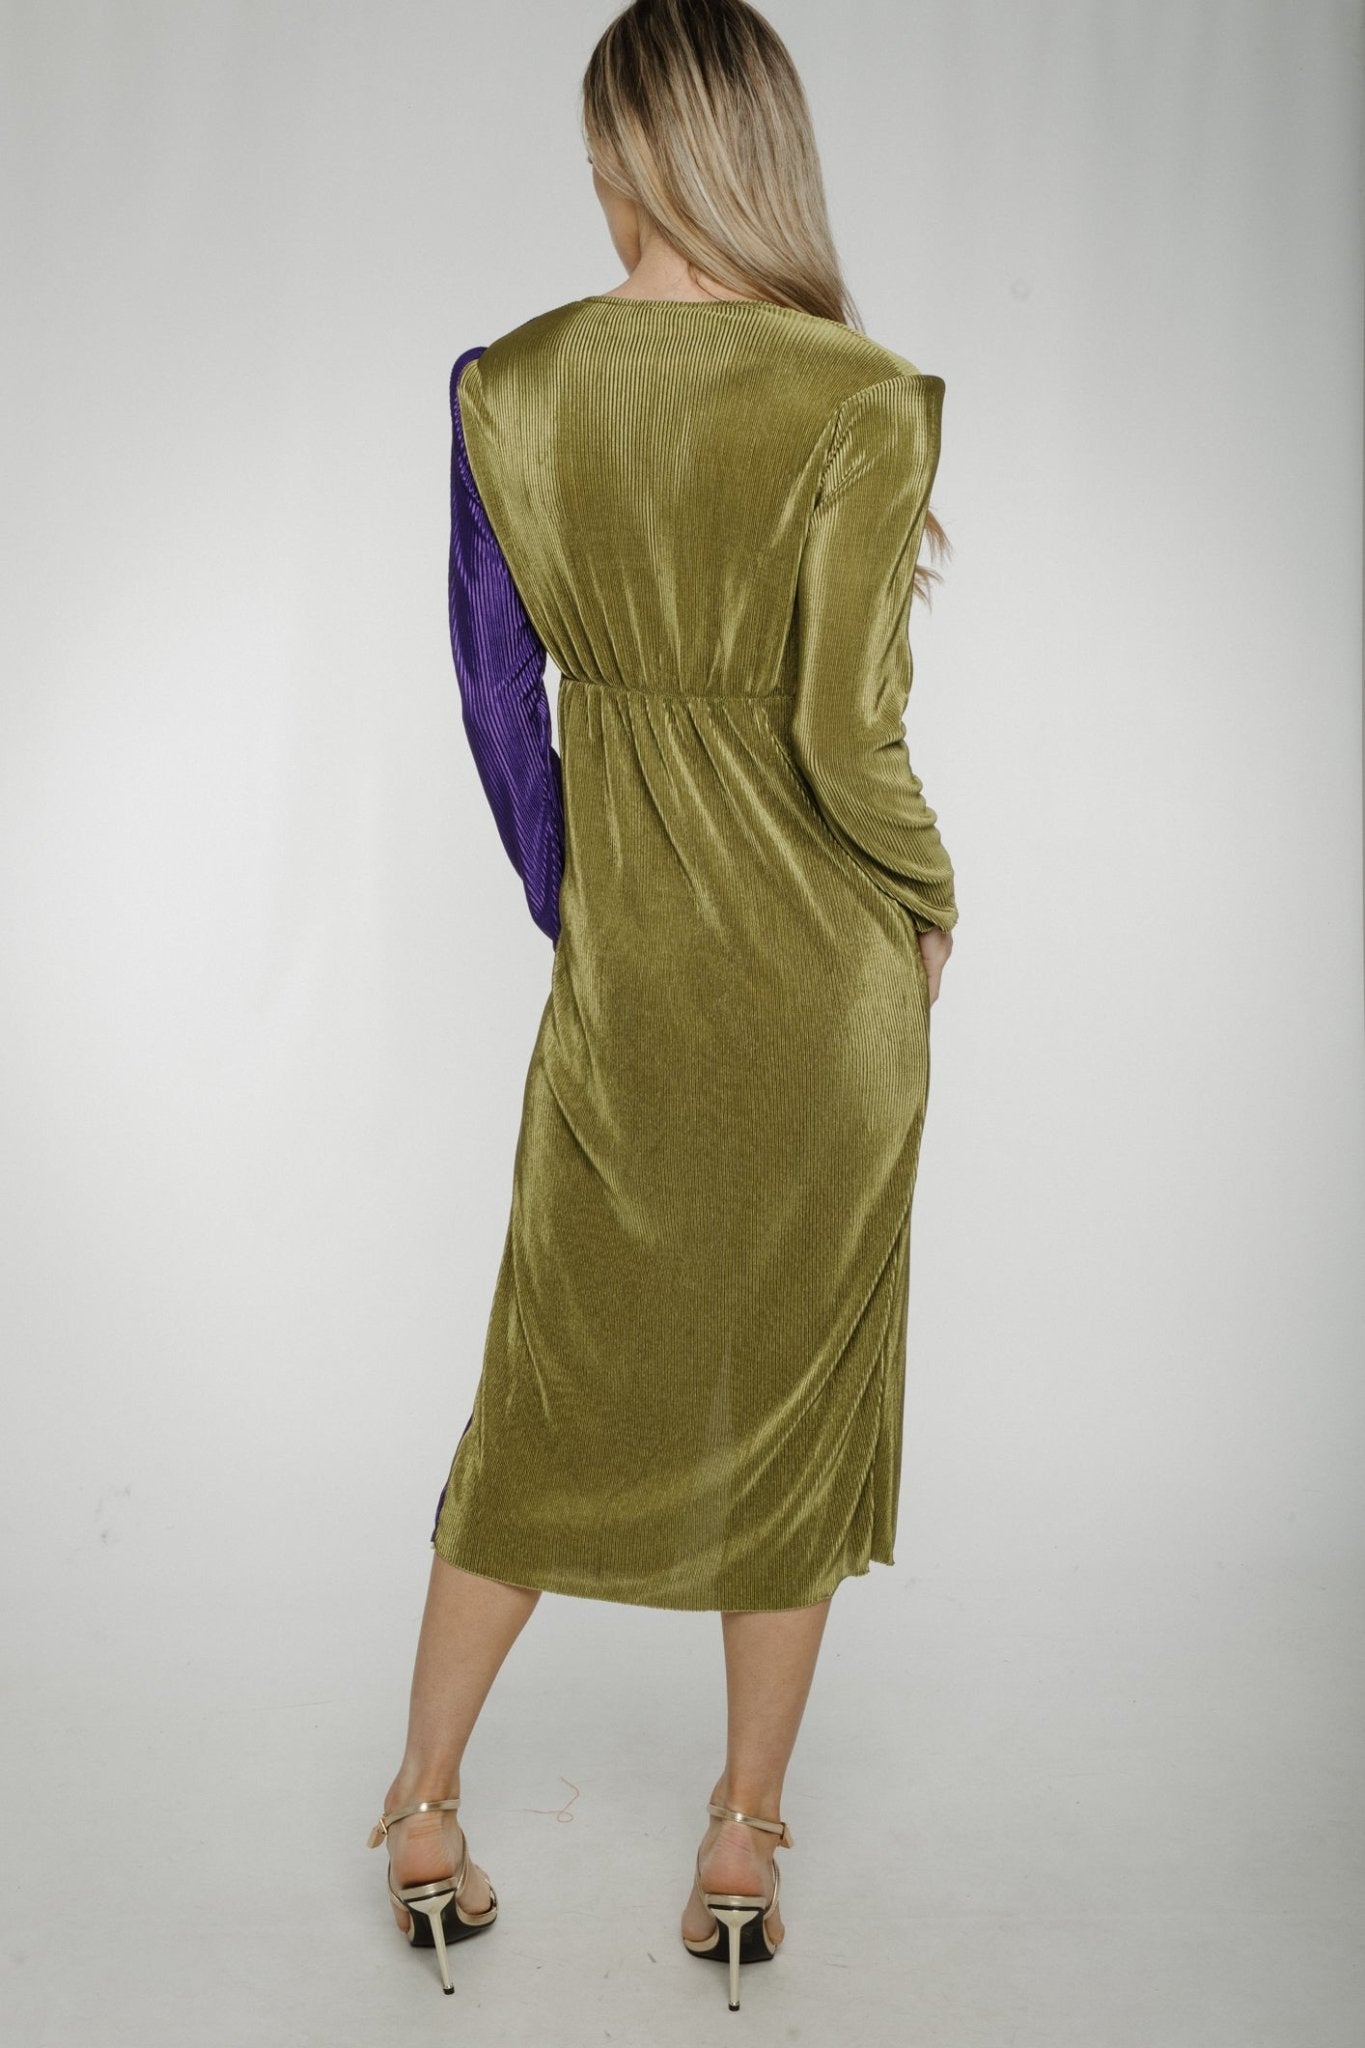 Indie Pleated Dress In Green & Purple - The Walk in Wardrobe